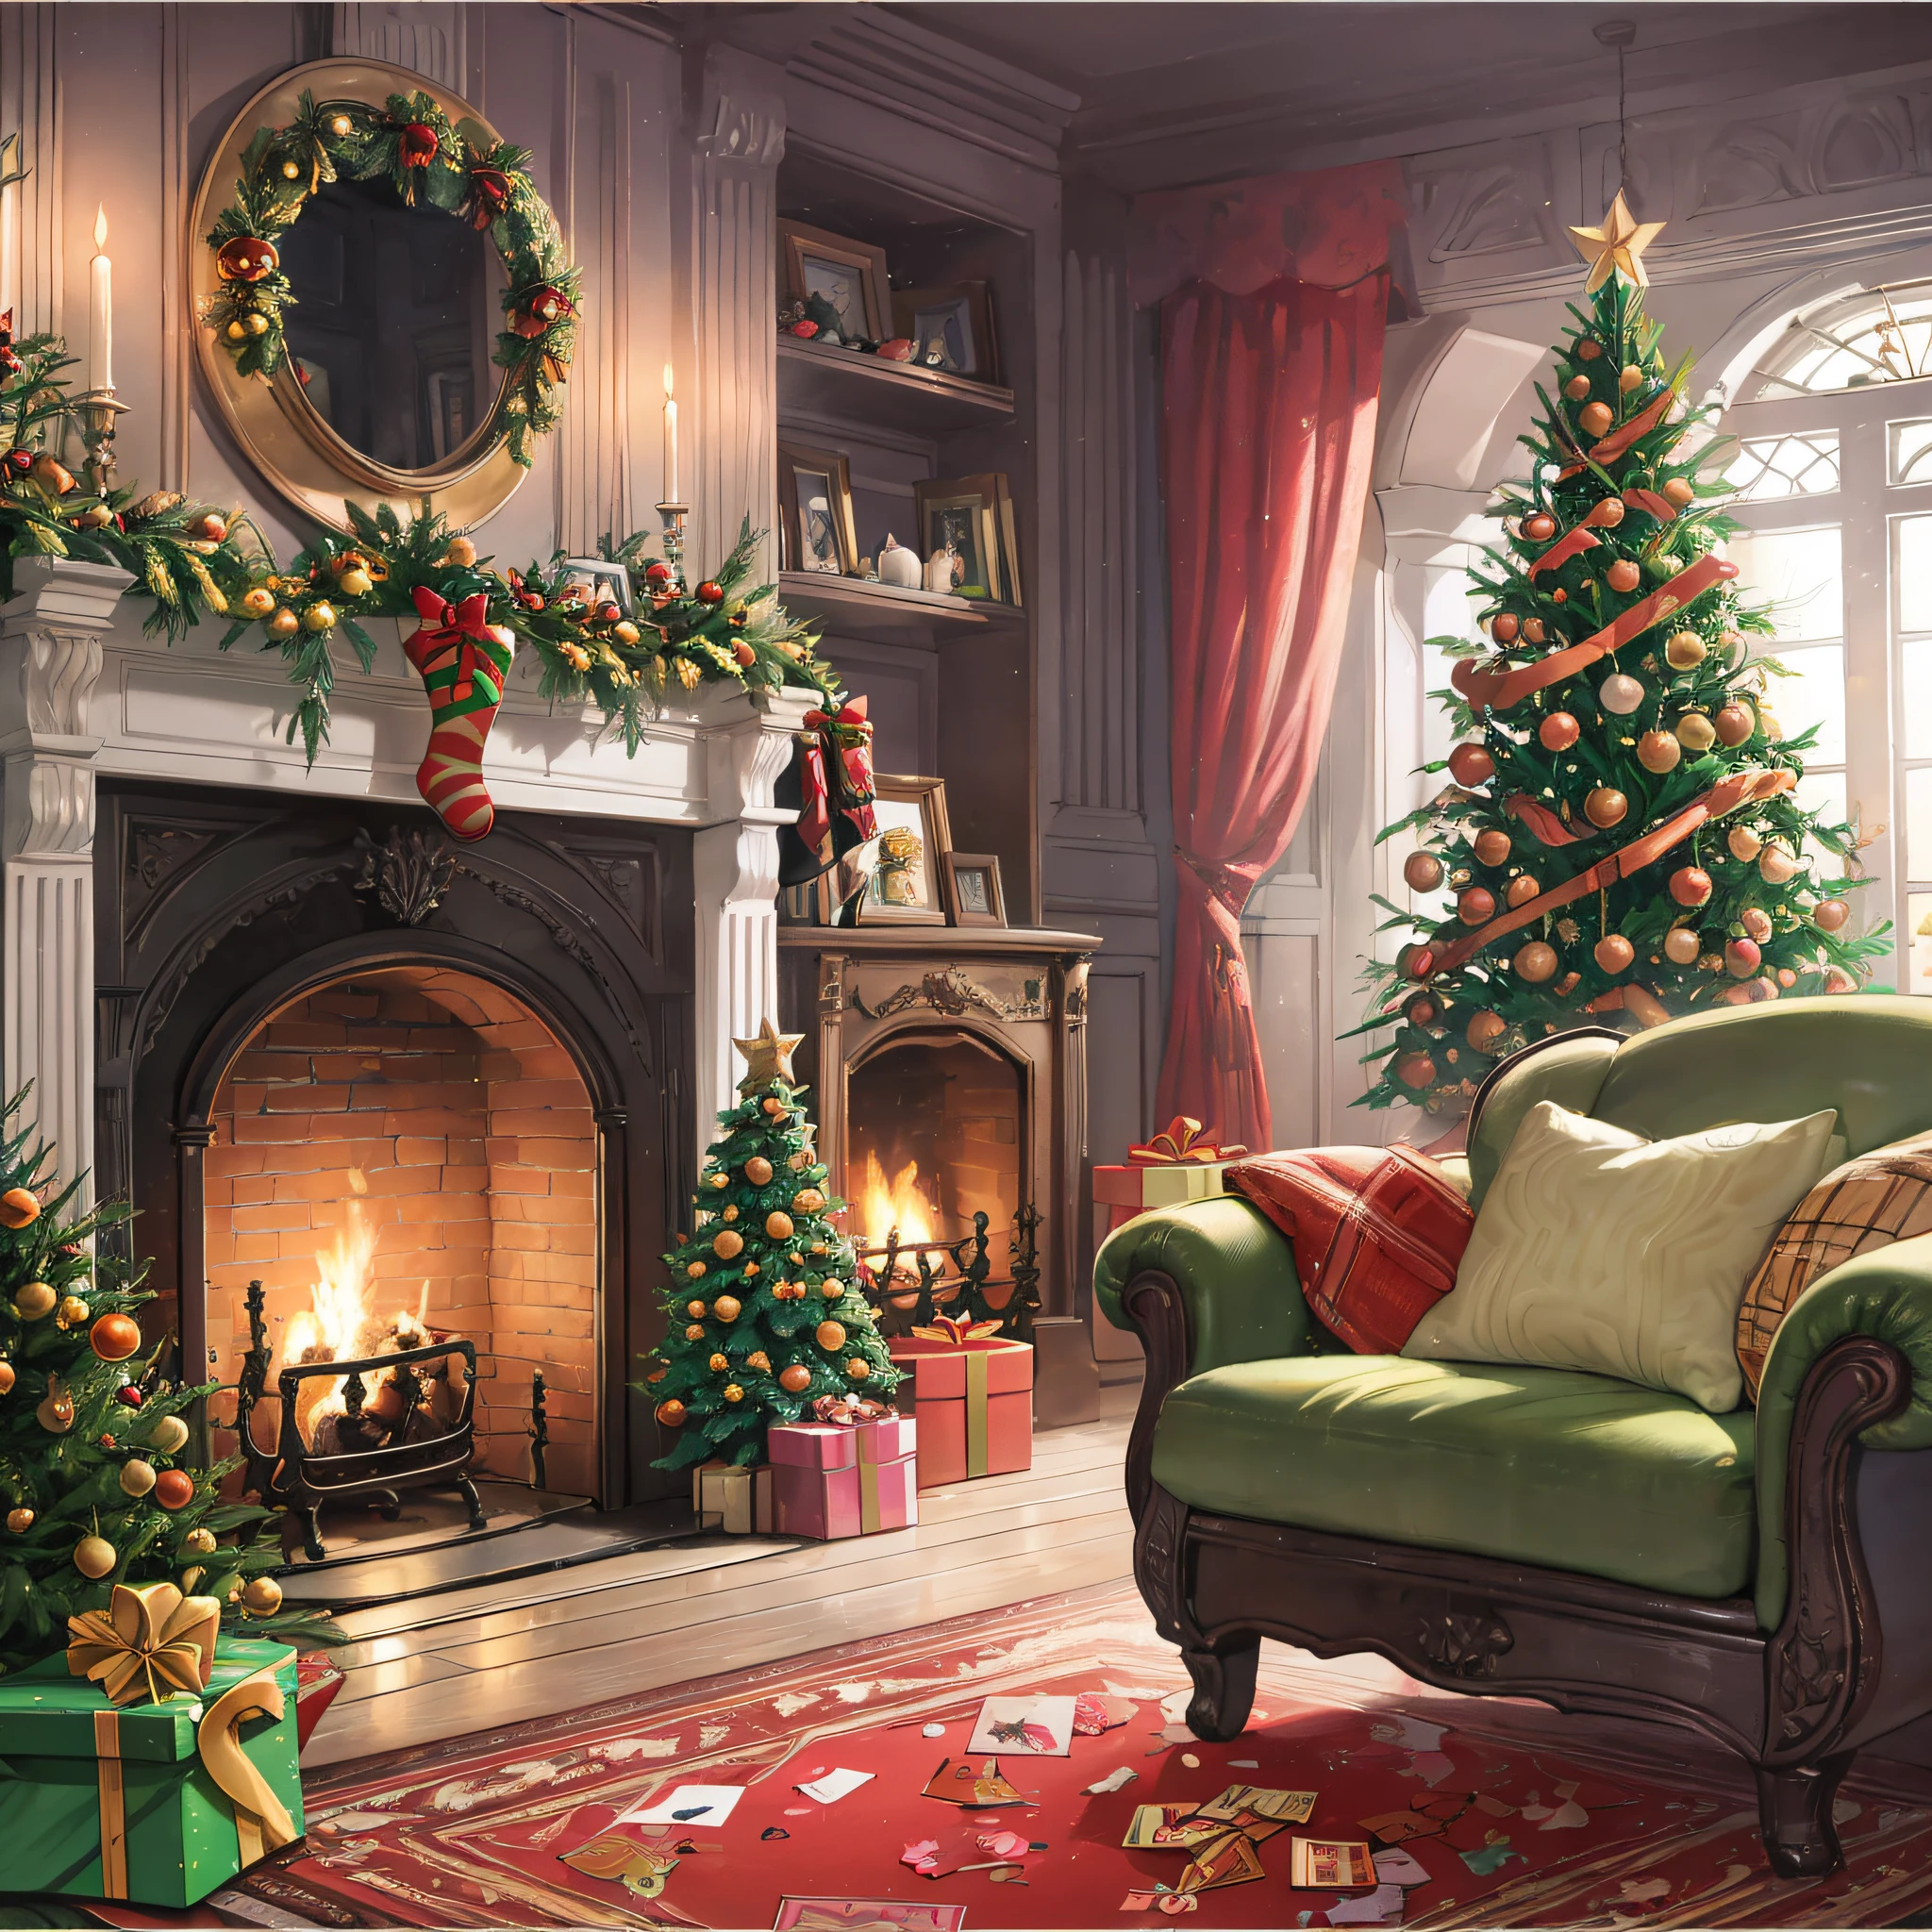 ((传统的)), ((問候卡)), ((最好的品質)), a beautiful Christmas 問候卡 featuring a cozy indoor scene with candlelight illuminating the festive atmosphere. 插畫風格為場景增添了異想天開和俏皮的感覺, 融入了聖誕精神的每個元素, 例如裝飾好的聖誕樹, 禮物, 和掛在壁爐旁的長襪. 紅色和綠色的傳統顏色營造出溫暖而誘人的氛圍, 場景的每個細節都以驚人的清晰度捕捉到. 使用 Adobe Illustrator 建立, 藝術品具有最高的品質和分辨率, 非常適合向親人發送溫暖的節日祝福. 与眼睛齐平, 风景, 傑作.